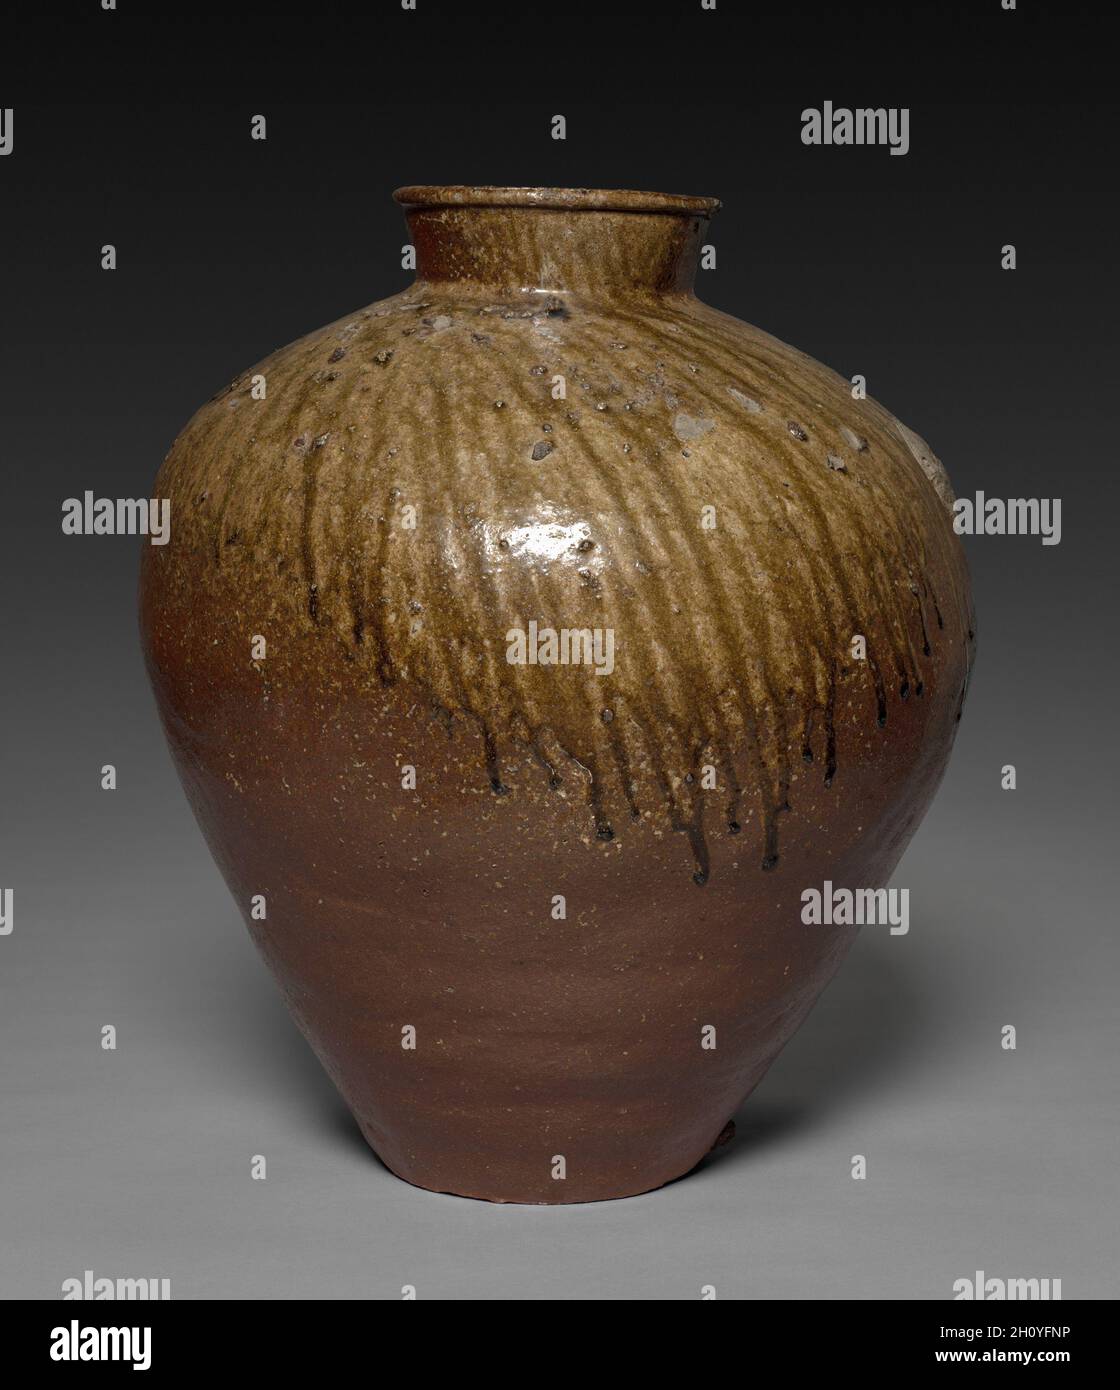 Bol de rangement, 1400 s.Japon, période de Muromachi (1392-1573).Grès avec glaçure de frêne naturelle (vaisselle Echizen); diamètre: 47.5 cm (18 11/16 in.); hors tout: 57.5 cm (22 5/8 in.).Situé dans la préfecture d'Fukui au nord-est de Kyoto, les fours Echizen produisaient des céramiques avec une peau rouge-violacé et un feldspath blanc caractéristique de l'argile locale utilisée dans cette pièce.Vers 1700, la chaude teinte des produits Echizen a gagné en popularité dans la pratique du thé, en particulier lorsque les navires ont exposé la surface robuste évidente ici en combinaison avec les gouttes dynamiques de glaçure brillante. Banque D'Images